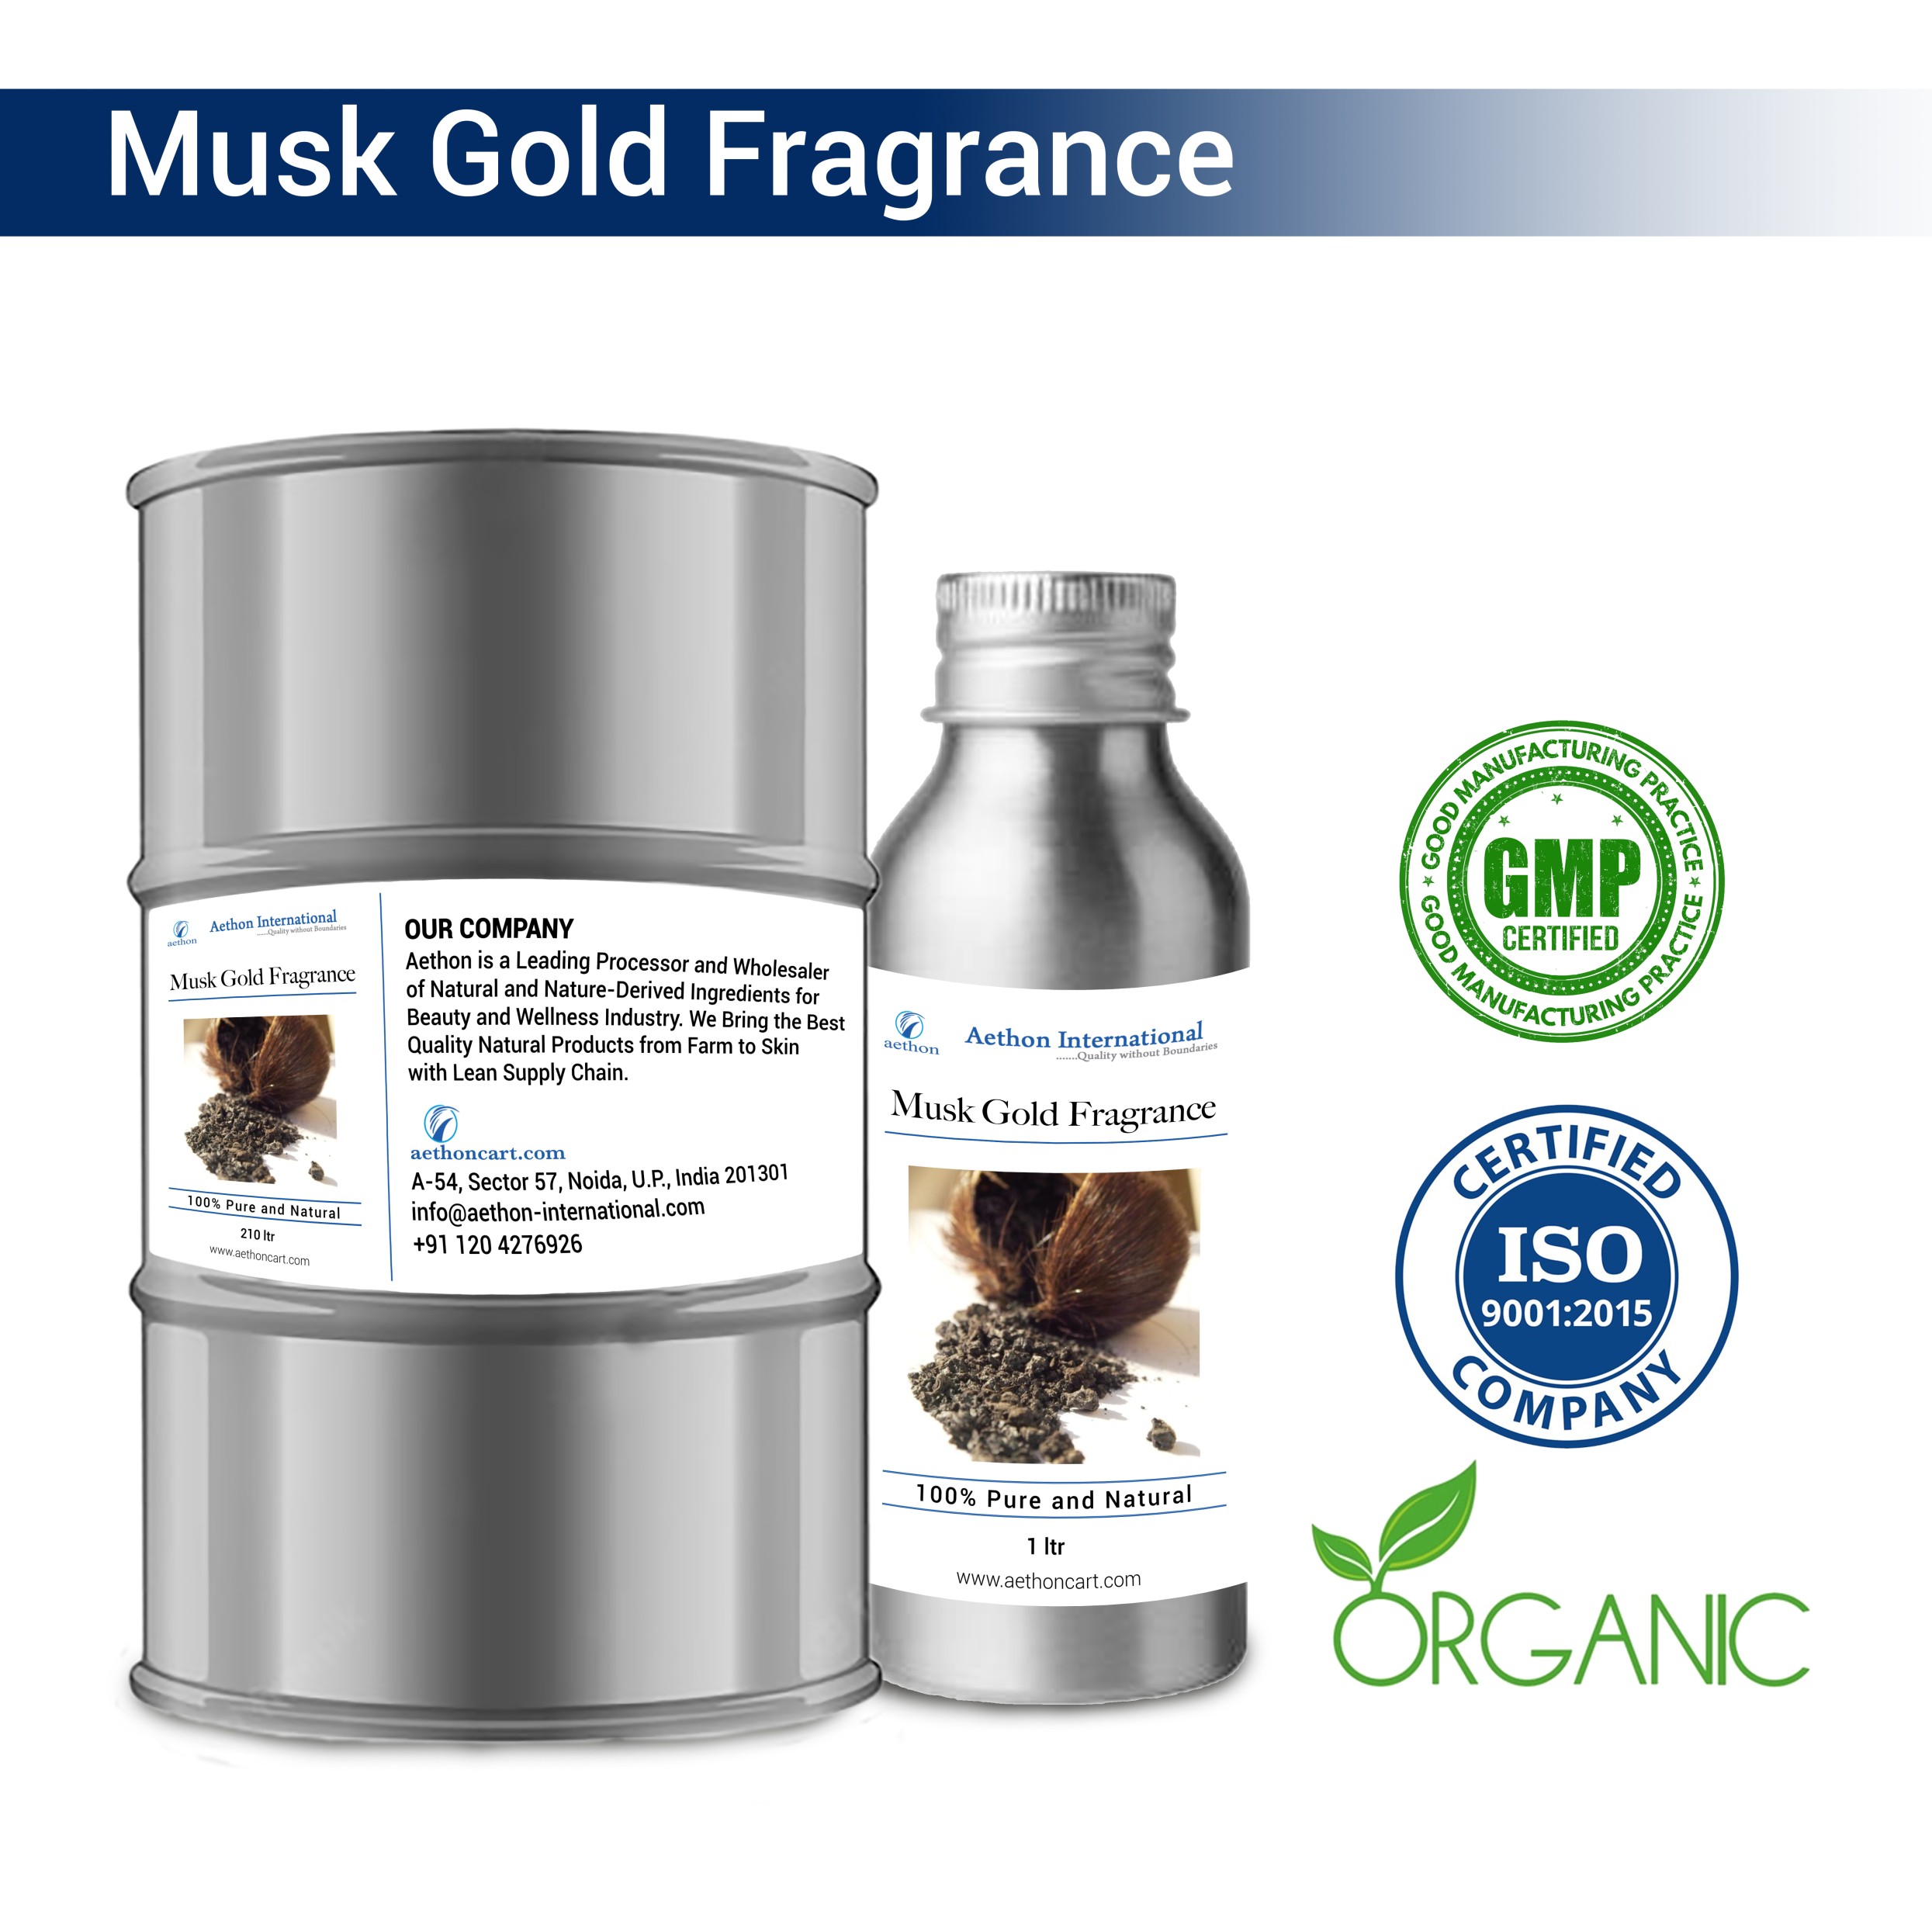 Musk Gold Fragrance